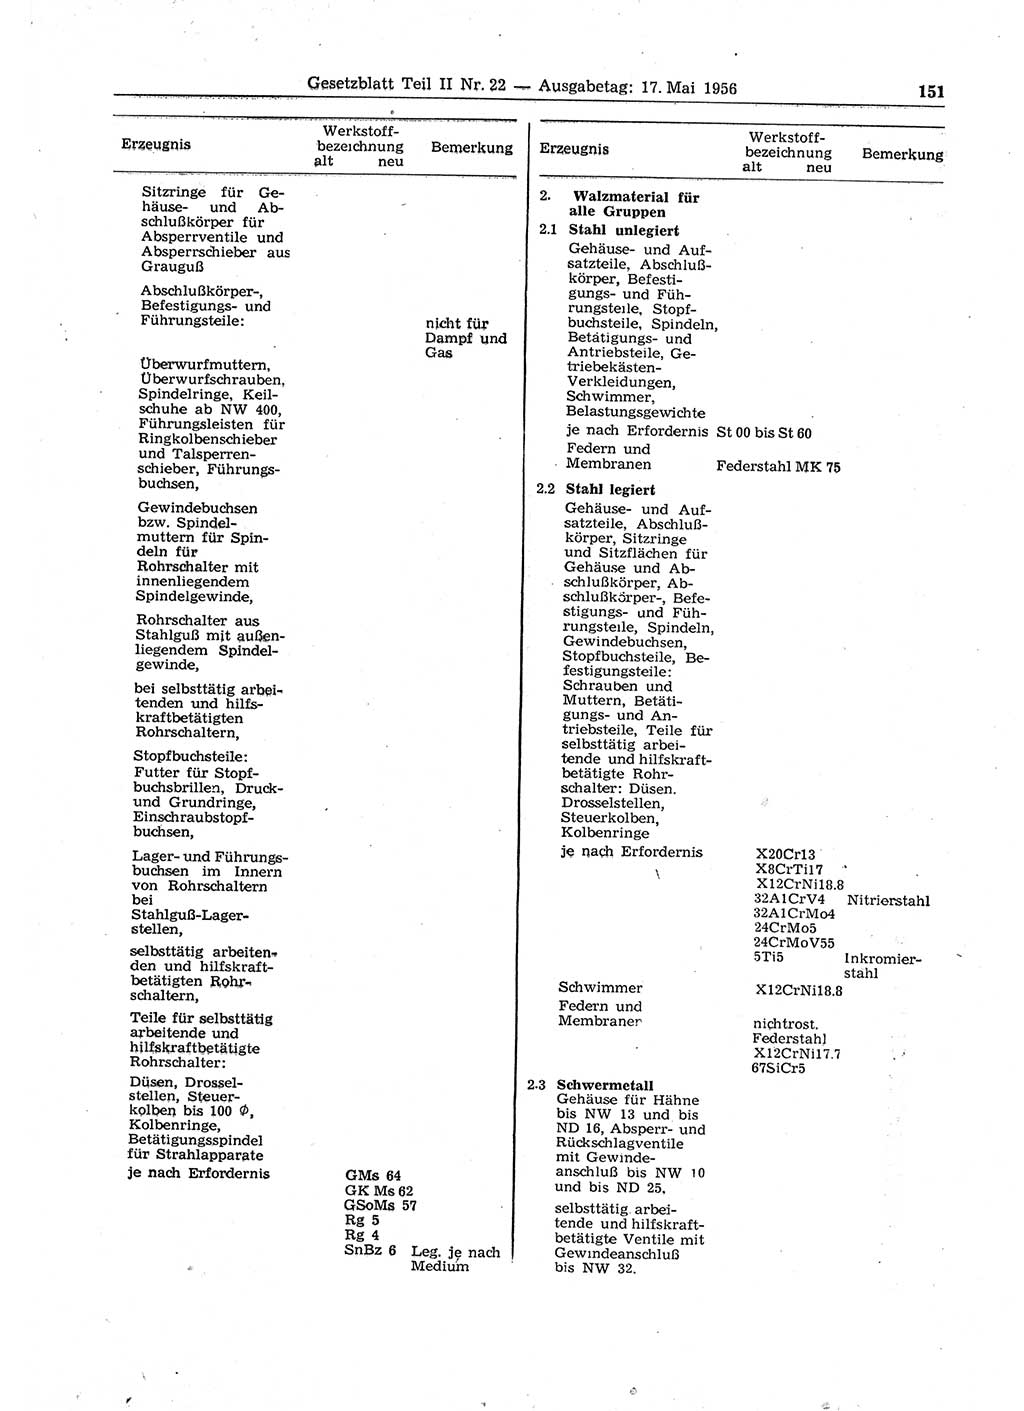 Gesetzblatt (GBl.) der Deutschen Demokratischen Republik (DDR) Teil ⅠⅠ 1956, Seite 151 (GBl. DDR ⅠⅠ 1956, S. 151)